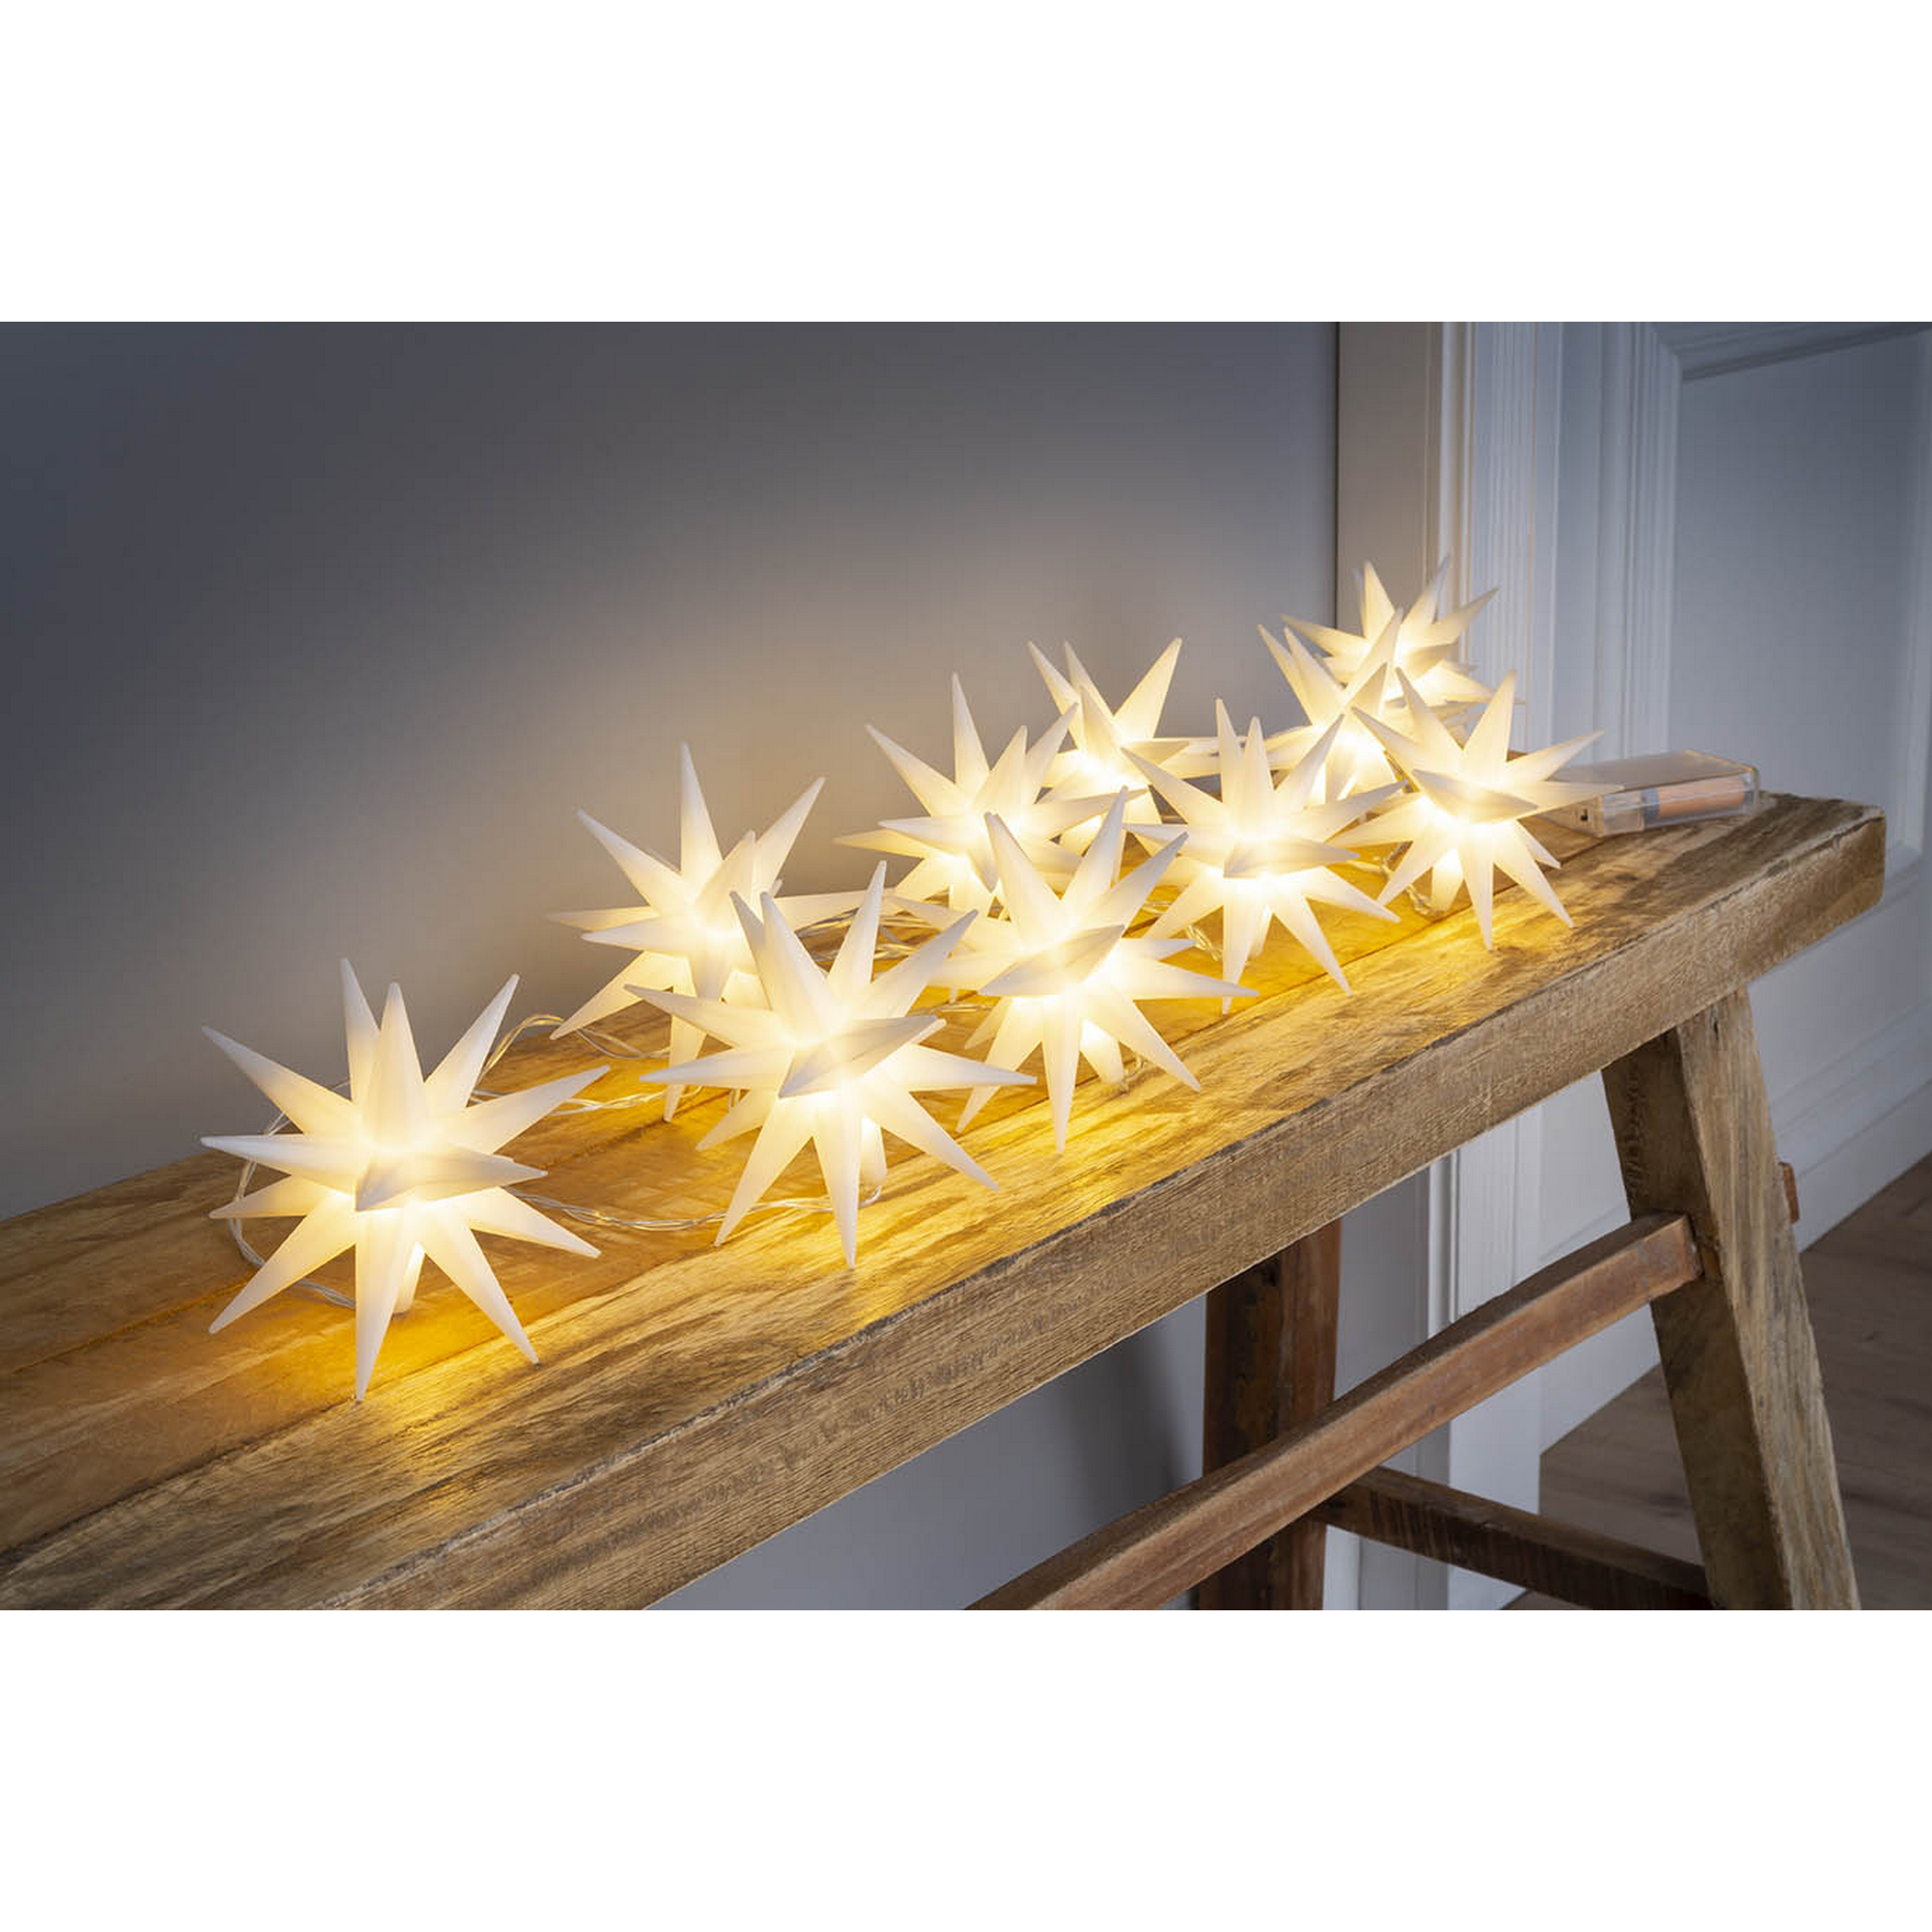 LED-Lichterkette Sterne weiß 10 LEDs warmweiß 270 cm